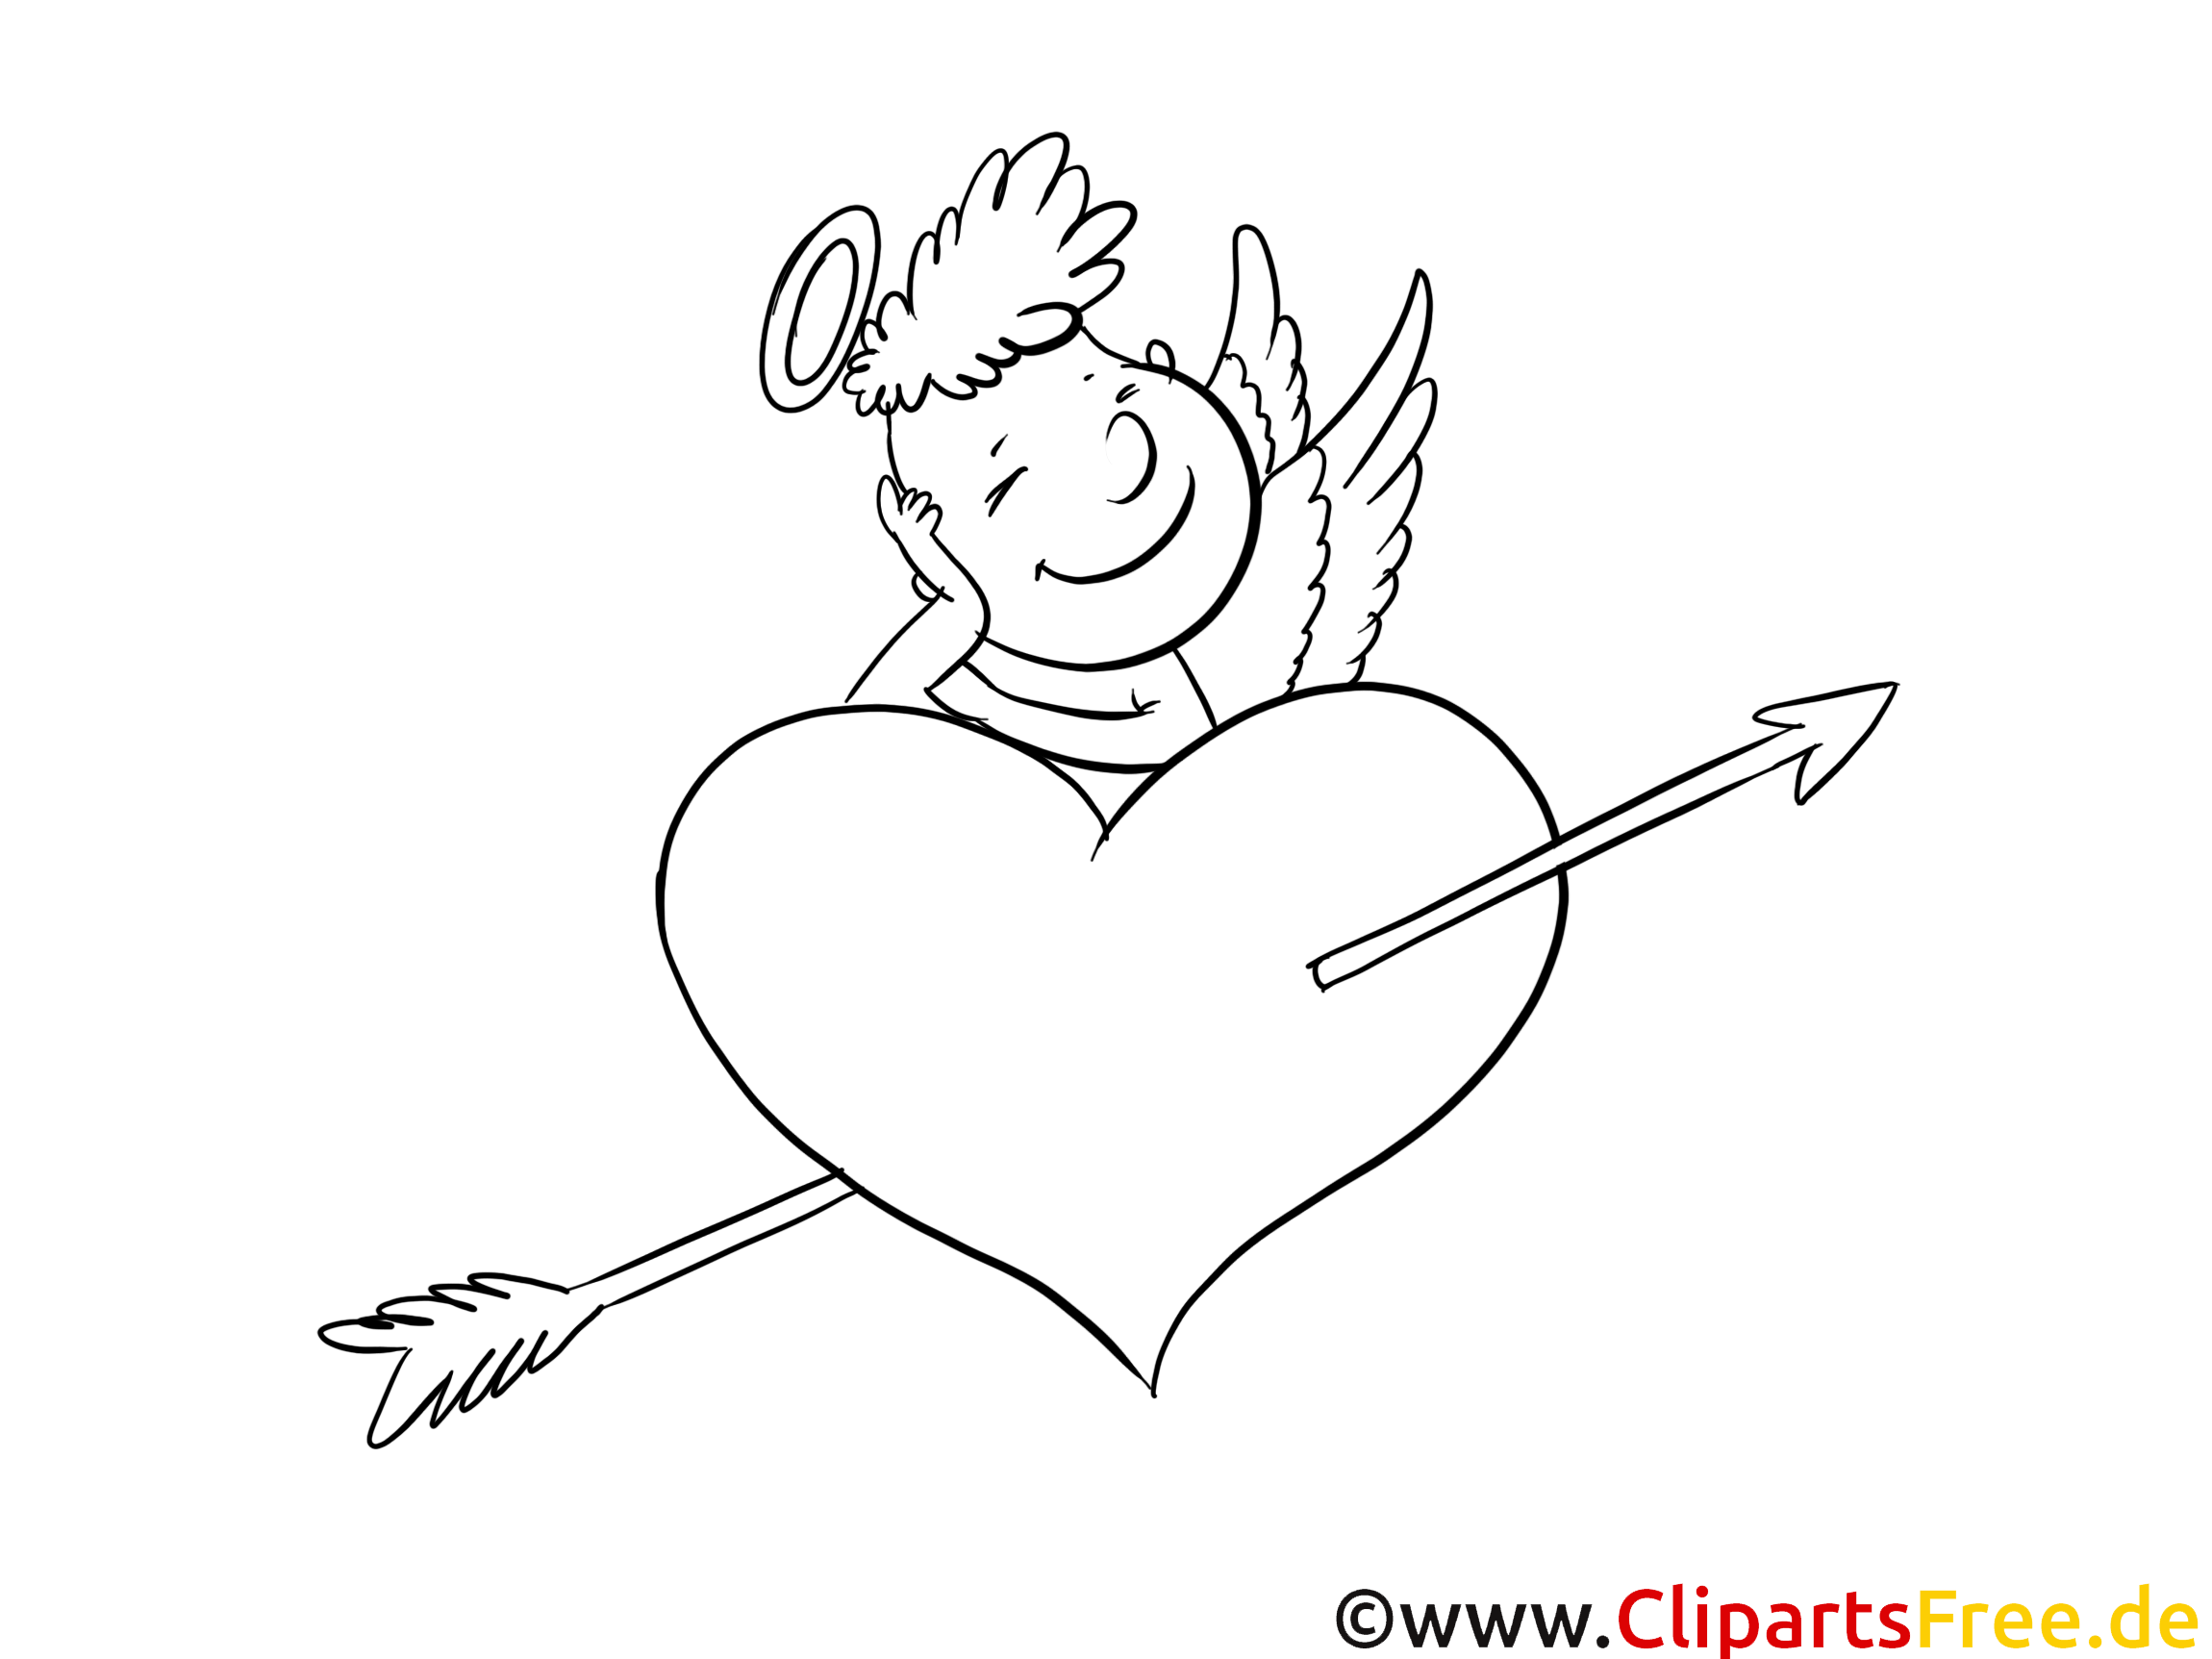 Cupidon clip art gratuit – Saint-valentin à imprimer